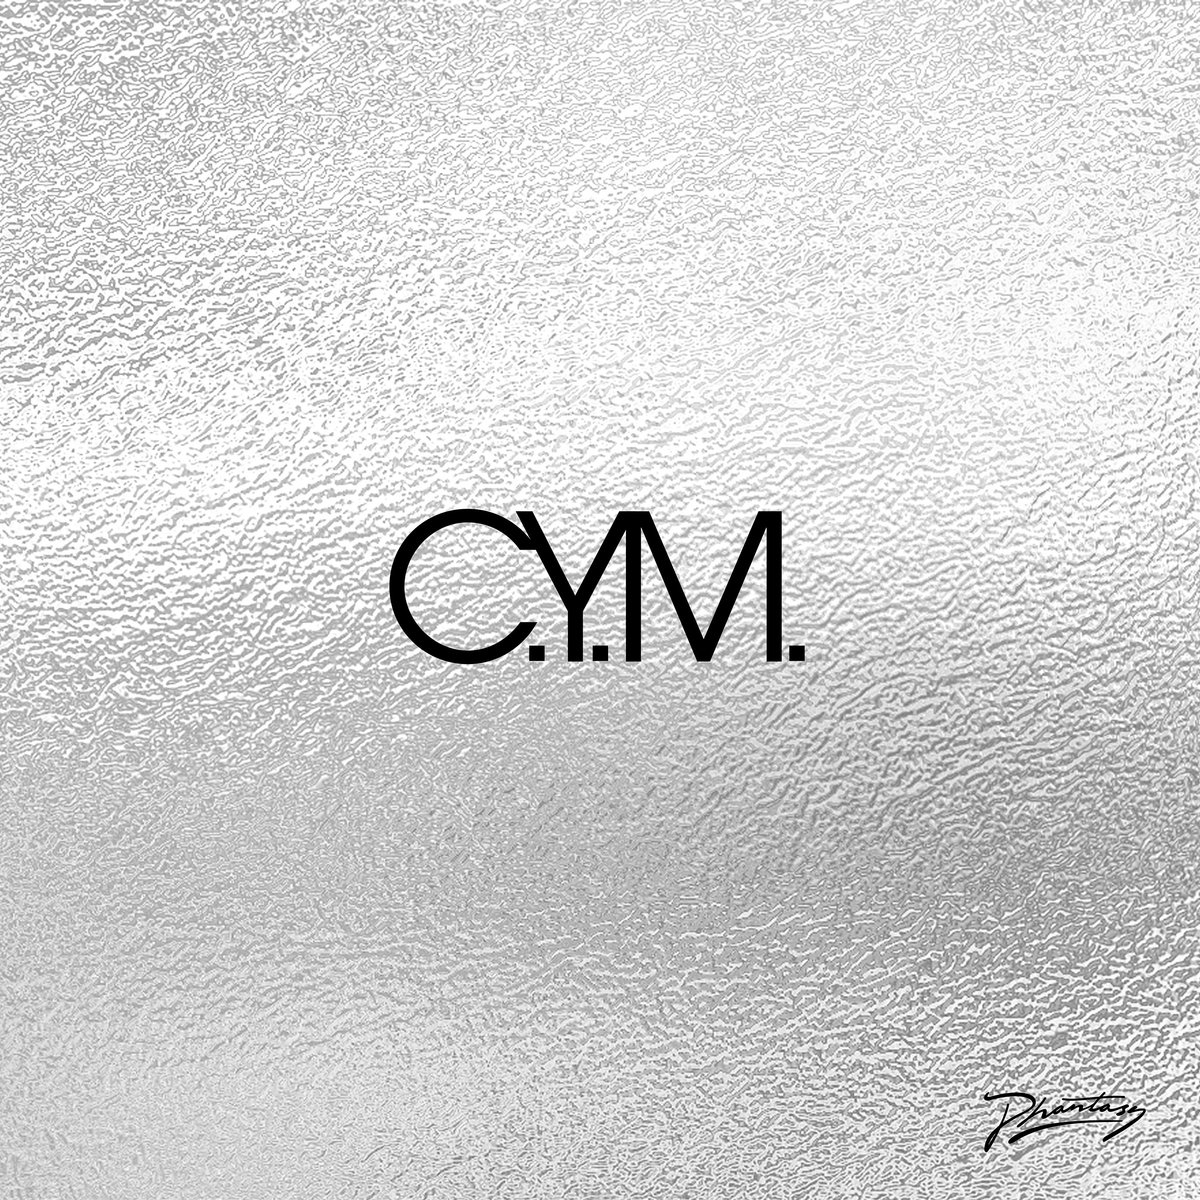 Single of the week – C.Y.M. – Capra